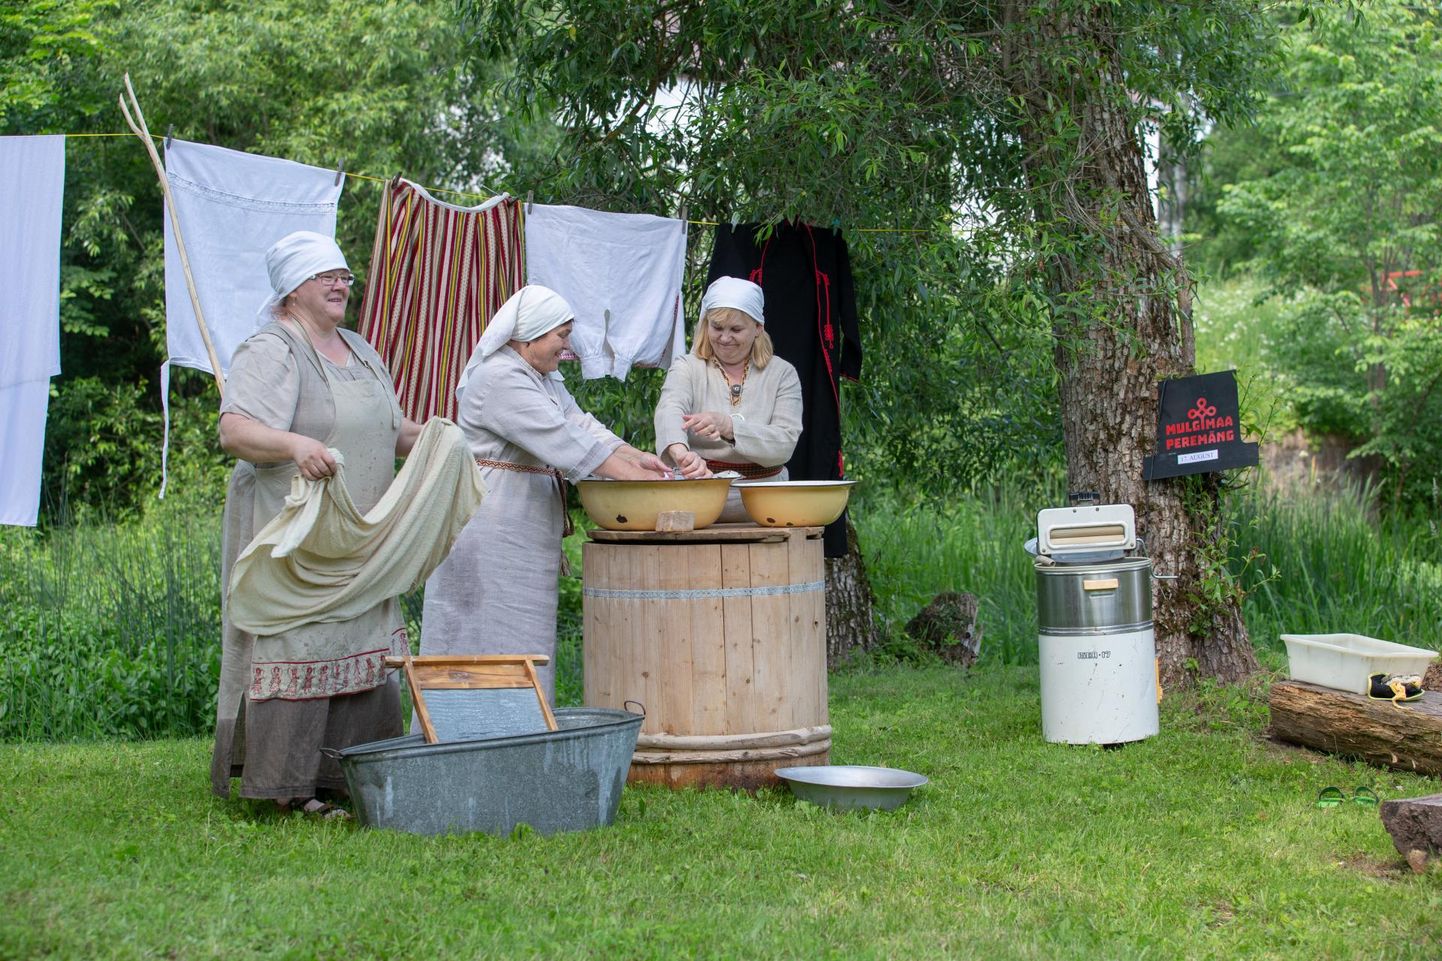 Mulgimaa peremängul näeb selle kandi vanu töid ja tegemisi, näiteks pesupesemist, nagu Rimmu naised seda vanu traditsioone järgides tegid.